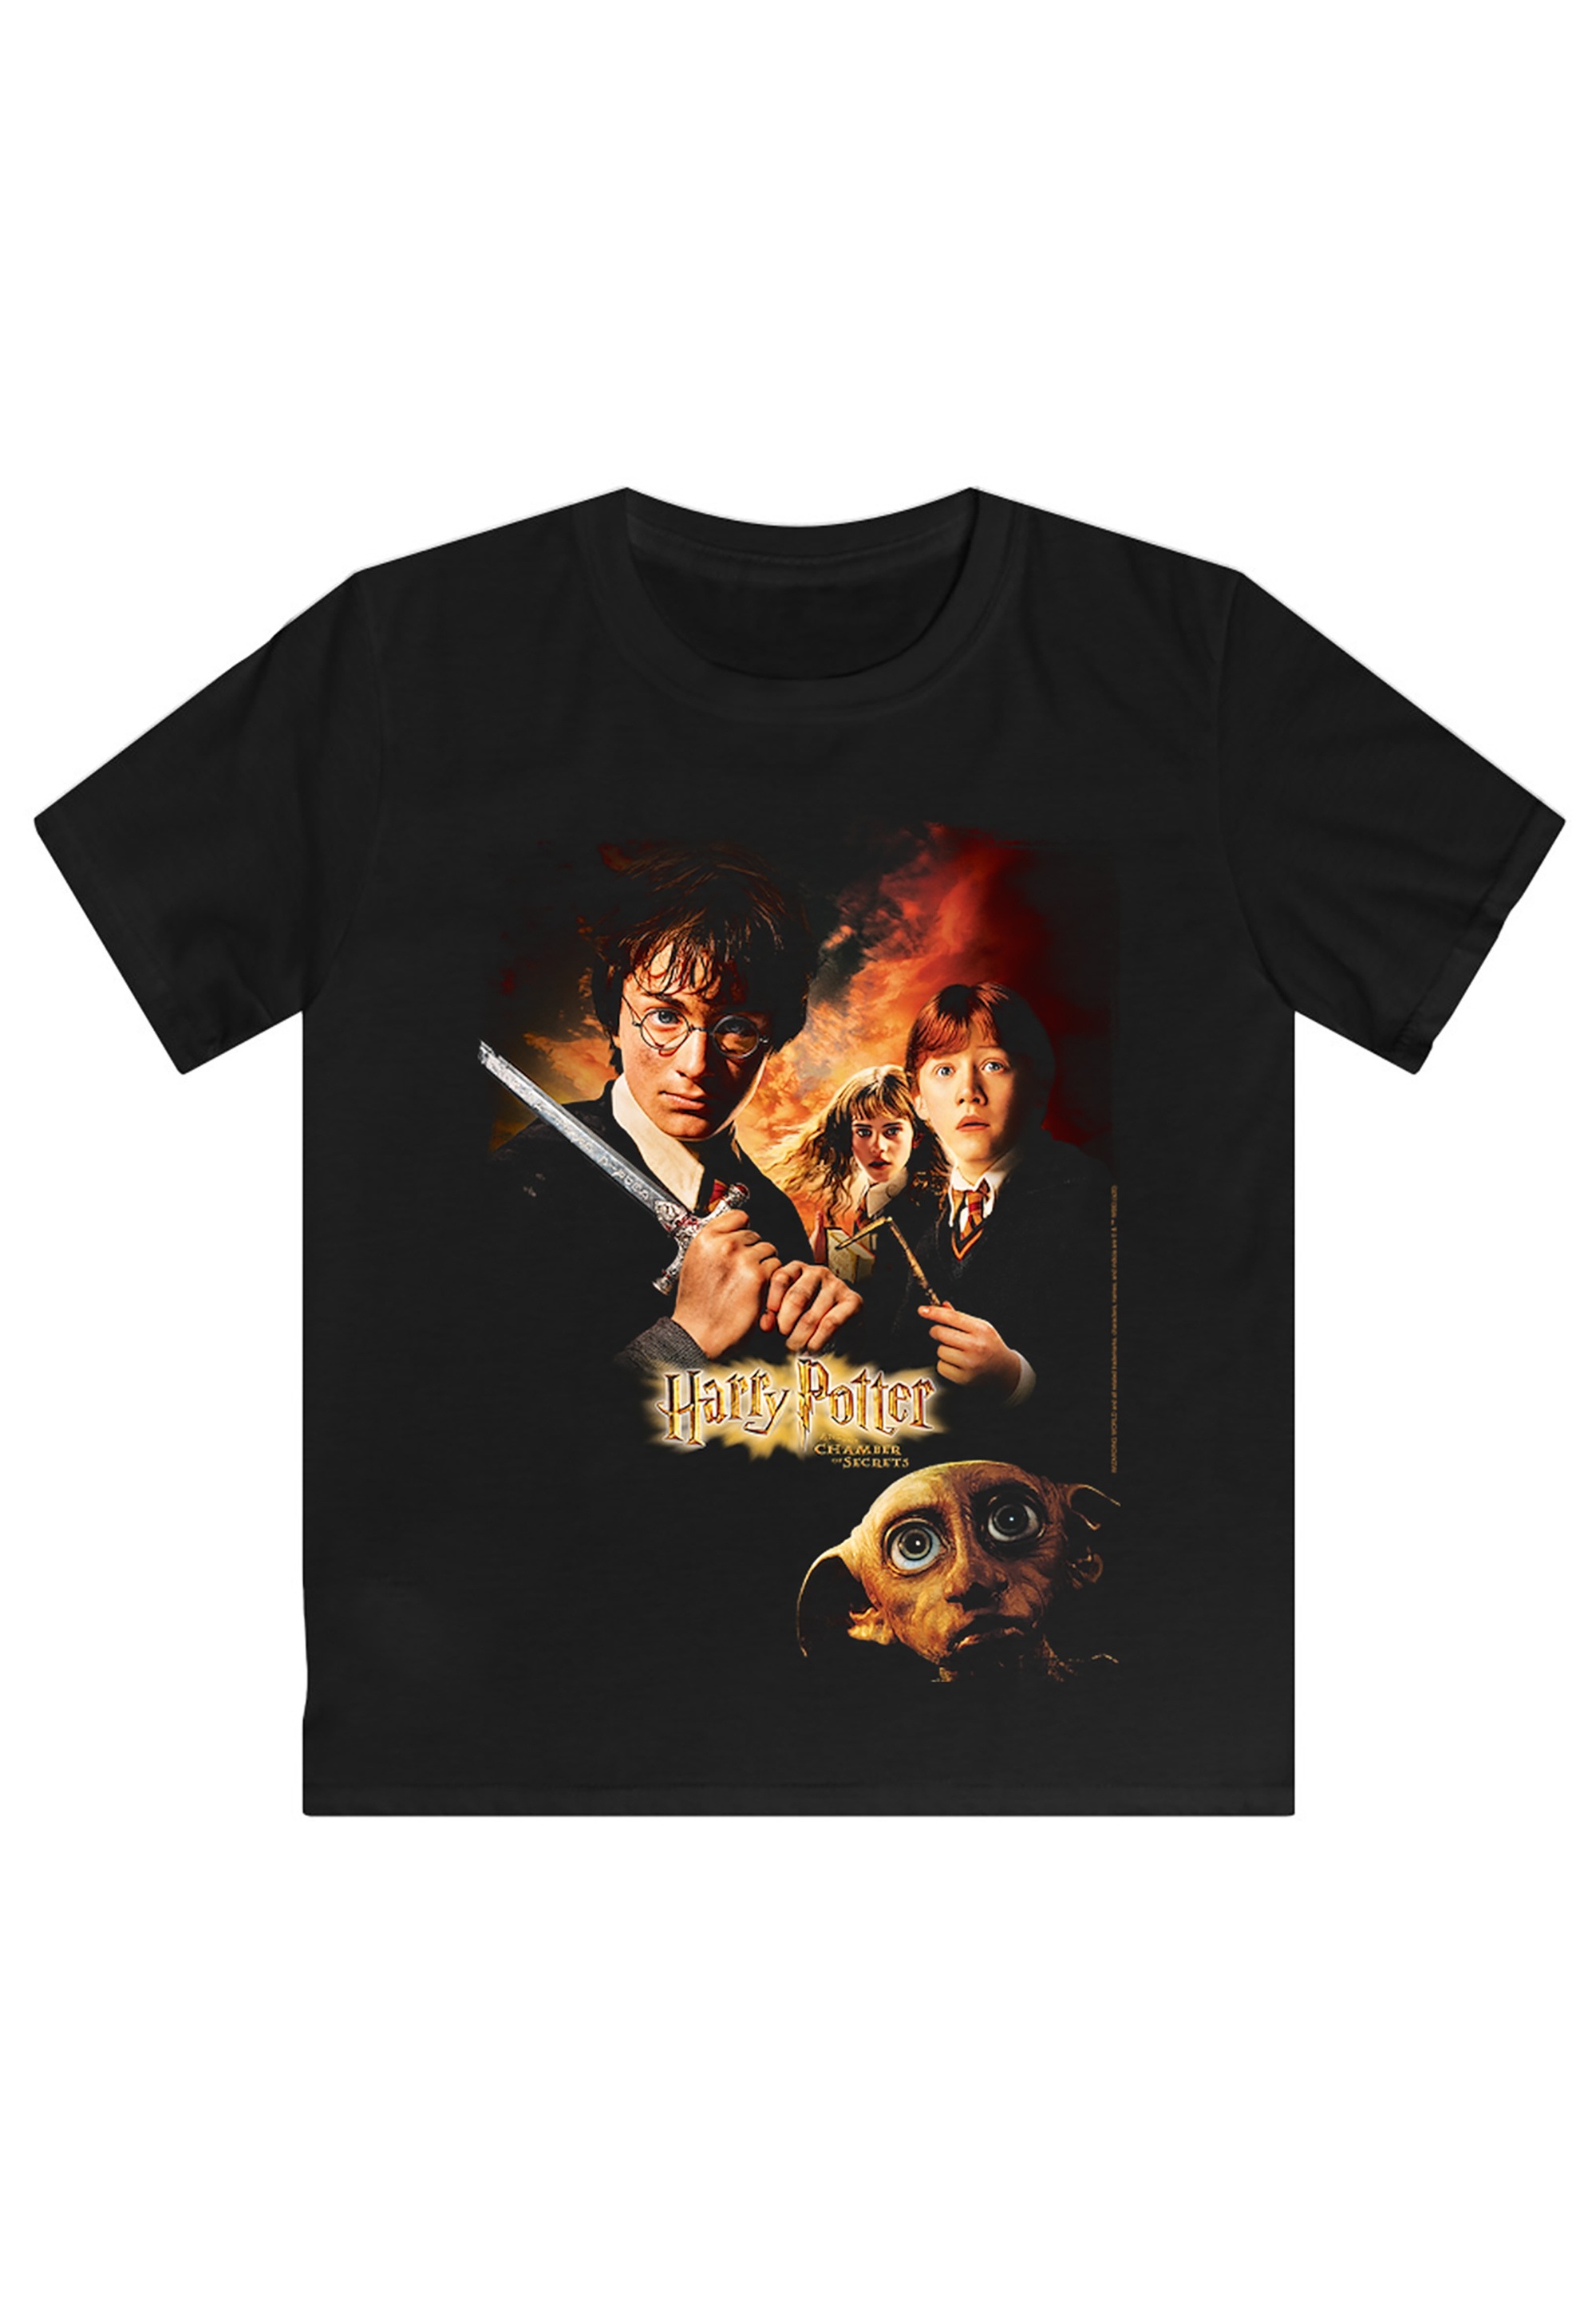 des Print »Harry BAUR Potter | F4NT4STIC kaufen T-Shirt Poster«, Schreckens Kammer